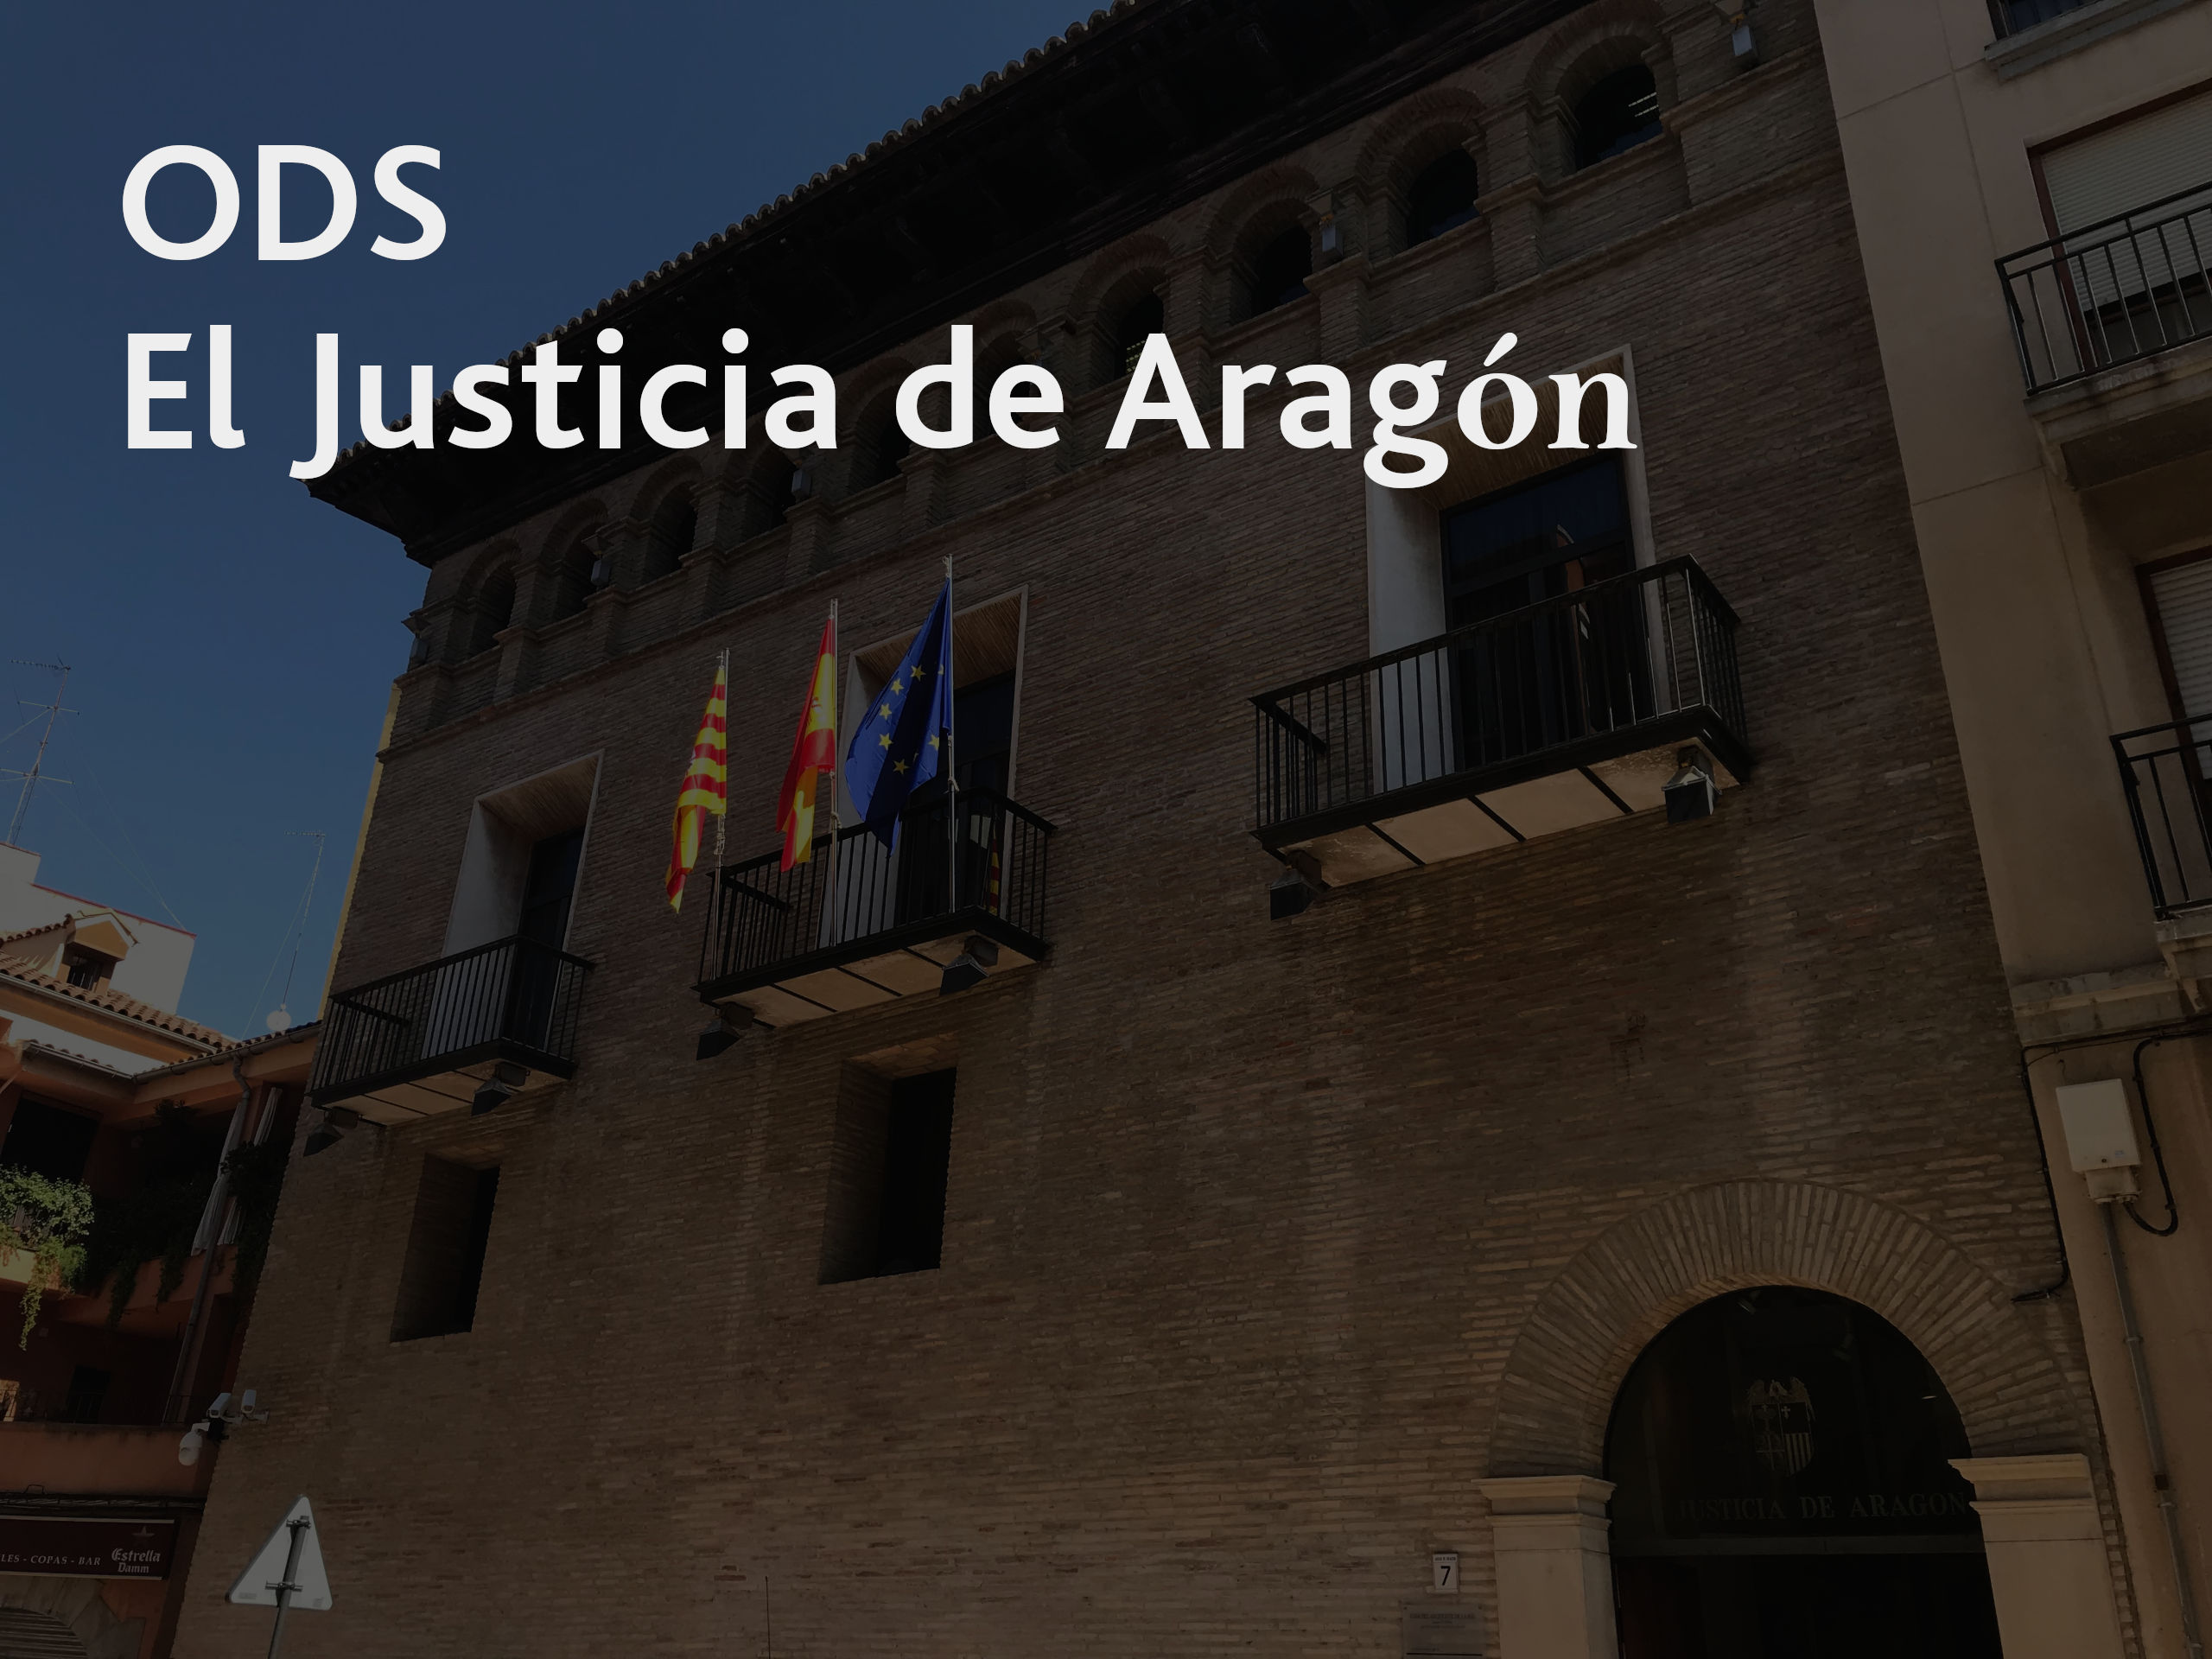 ODS El Justicia de Aragón - Acceso al documento pdf